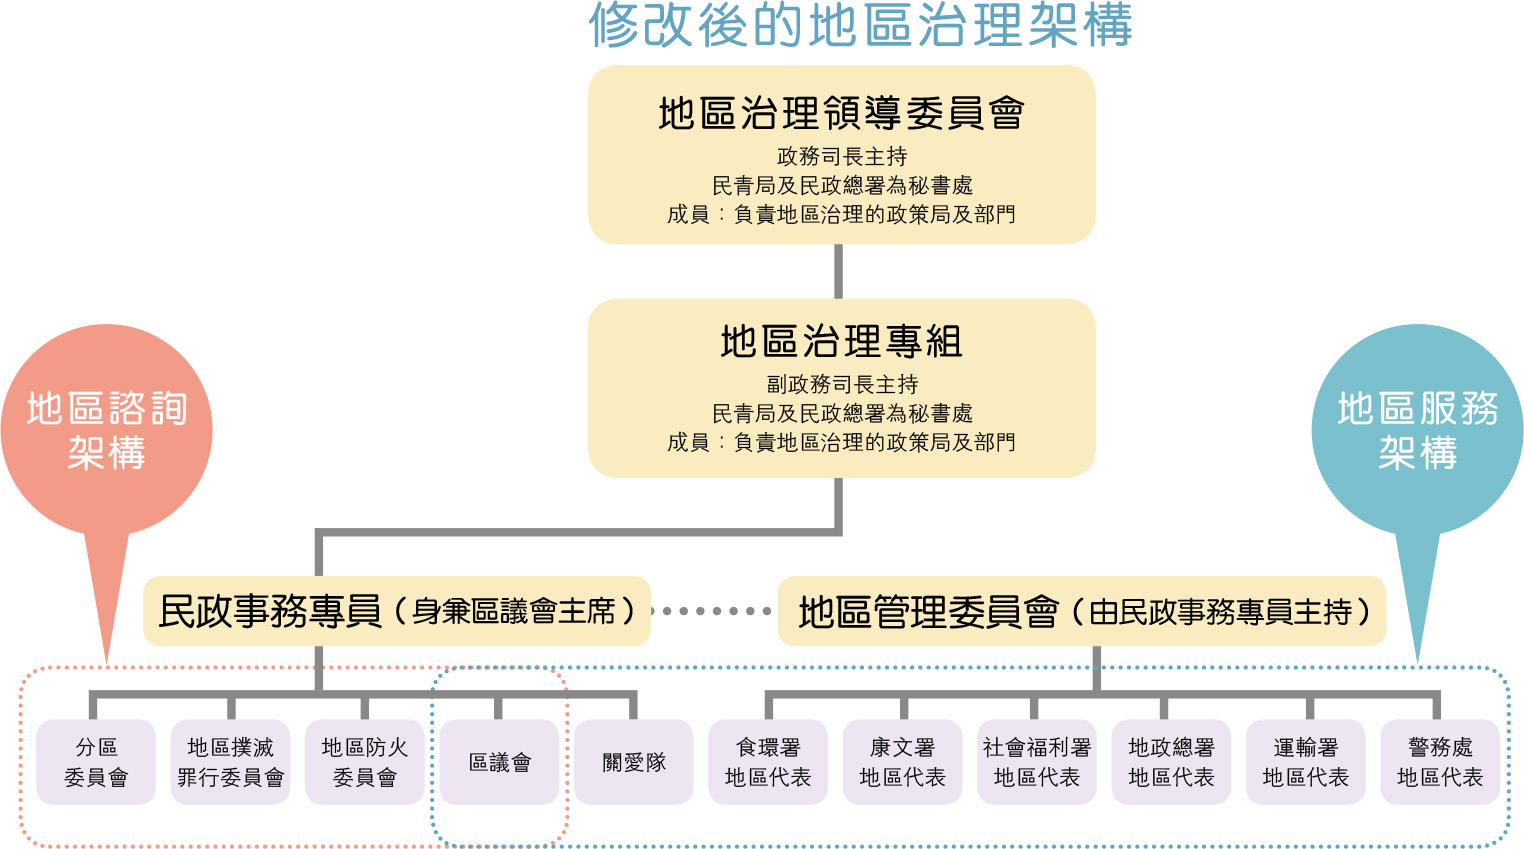 ŪGaϪvz[c District governance structure